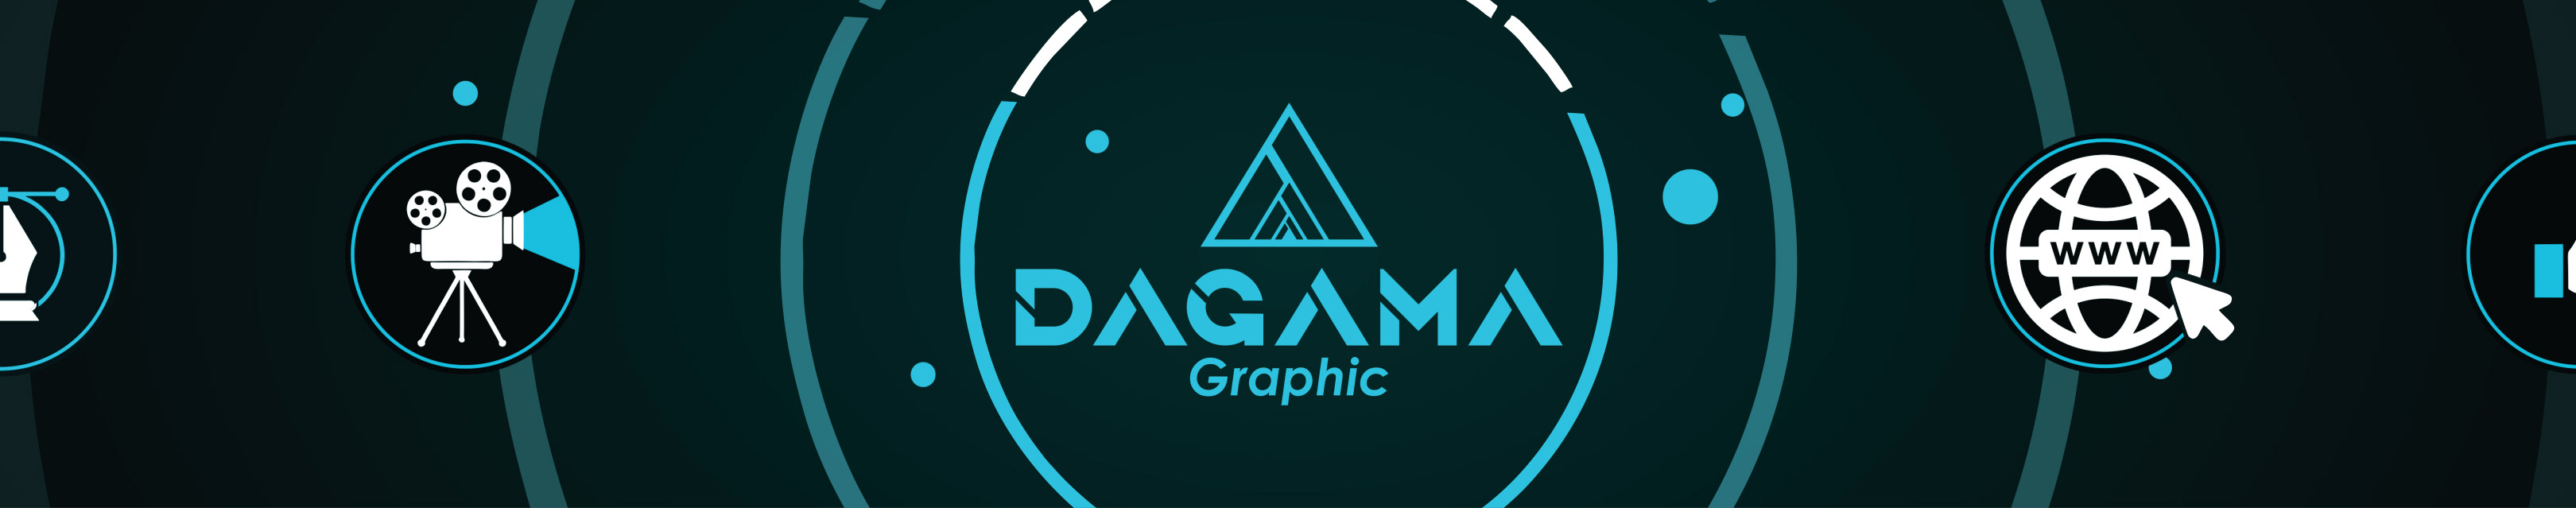 Dagama Graphic's profile banner